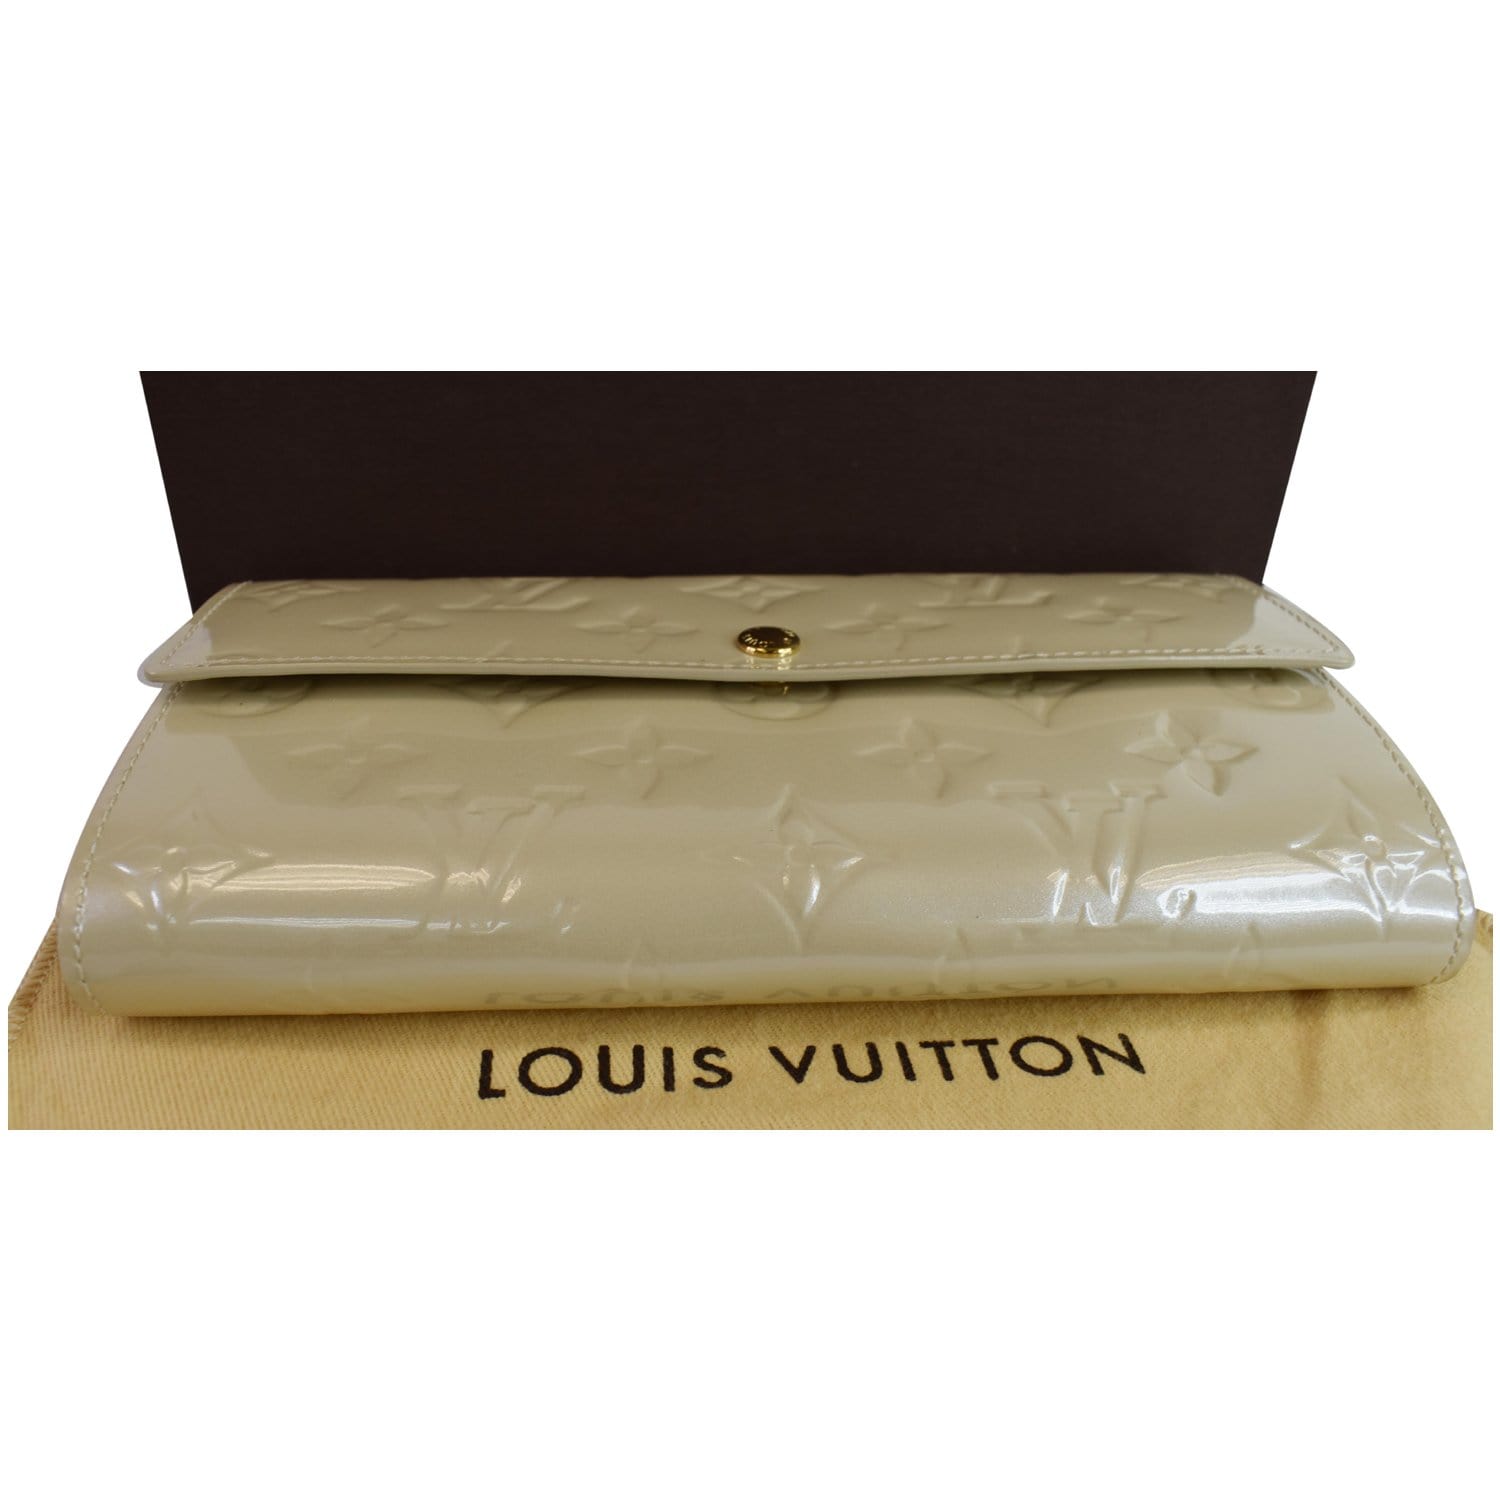 Authentic Louis Vuitton Vernis Sarah Wallet Genuine Patent 